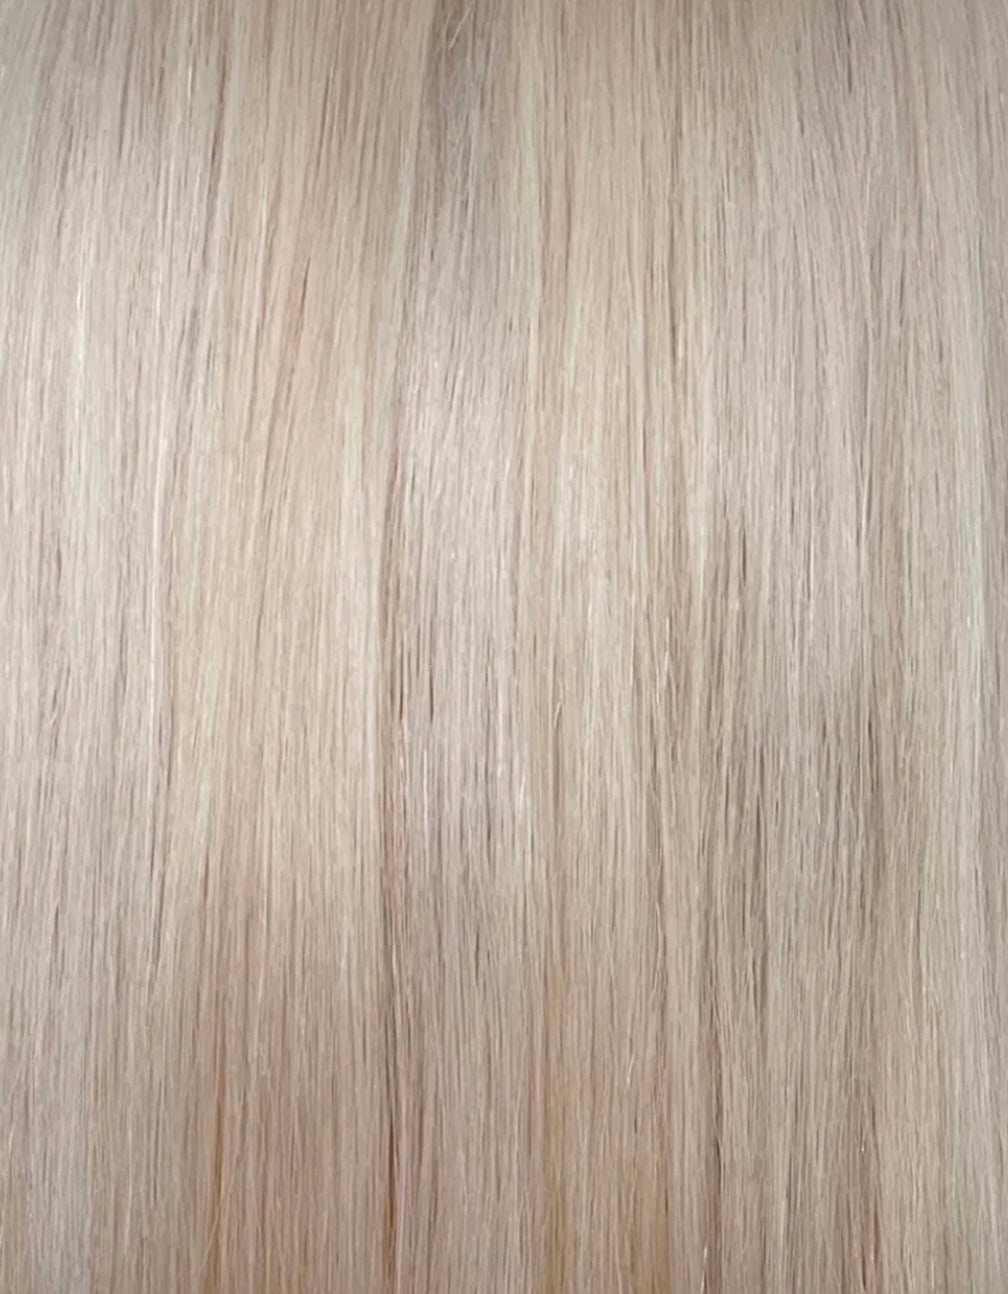 Custom colour - HD FULL LACE wig - 24” European hair - 21.5/22